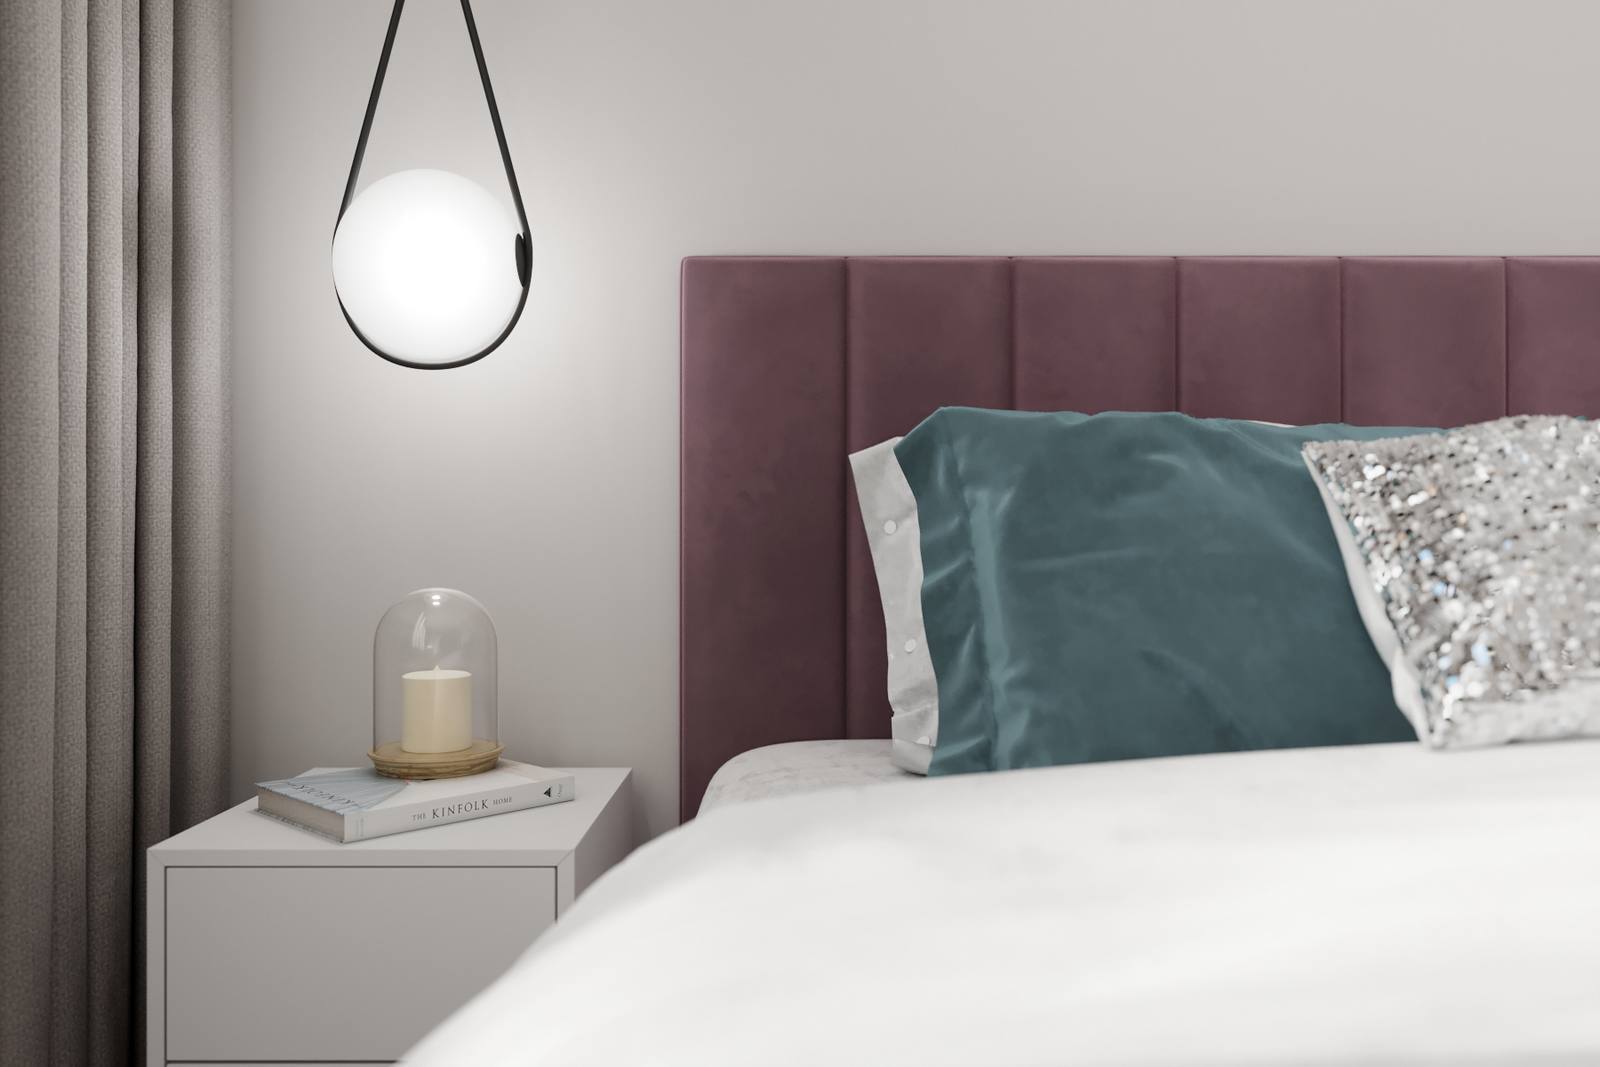 Căn phòng được nhấn nhá bằng sắc xanh lá cây của những chiếc gối và màu tím ở khu vực đầu giường để thêm phần nổi bật.